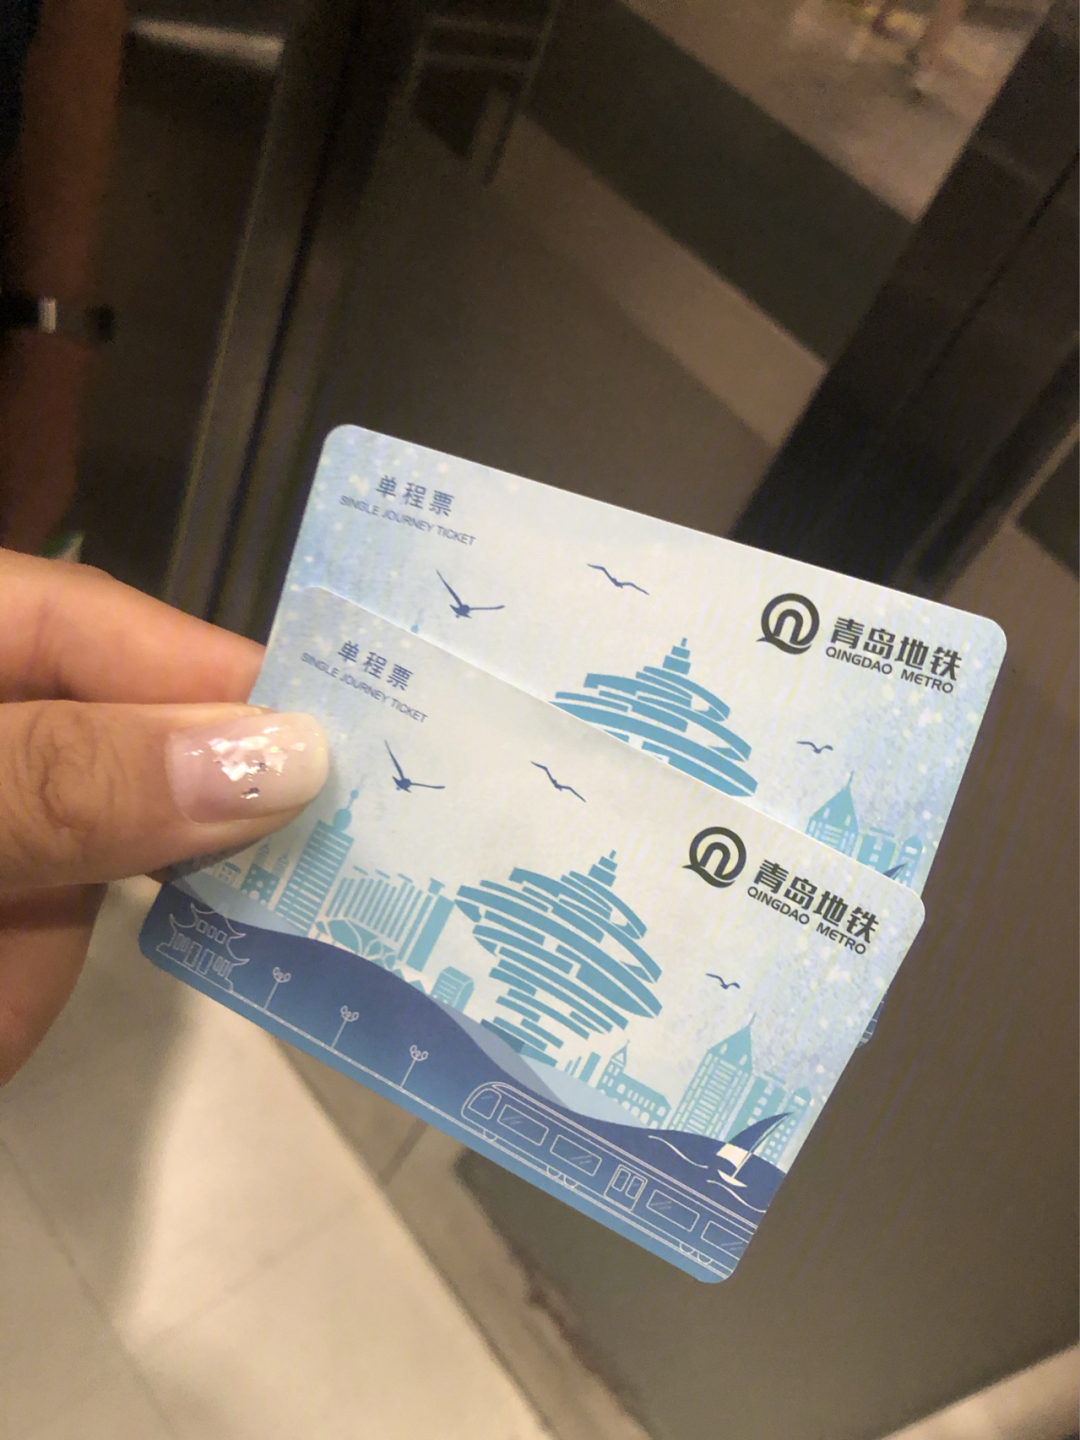 青岛地铁单程票图片